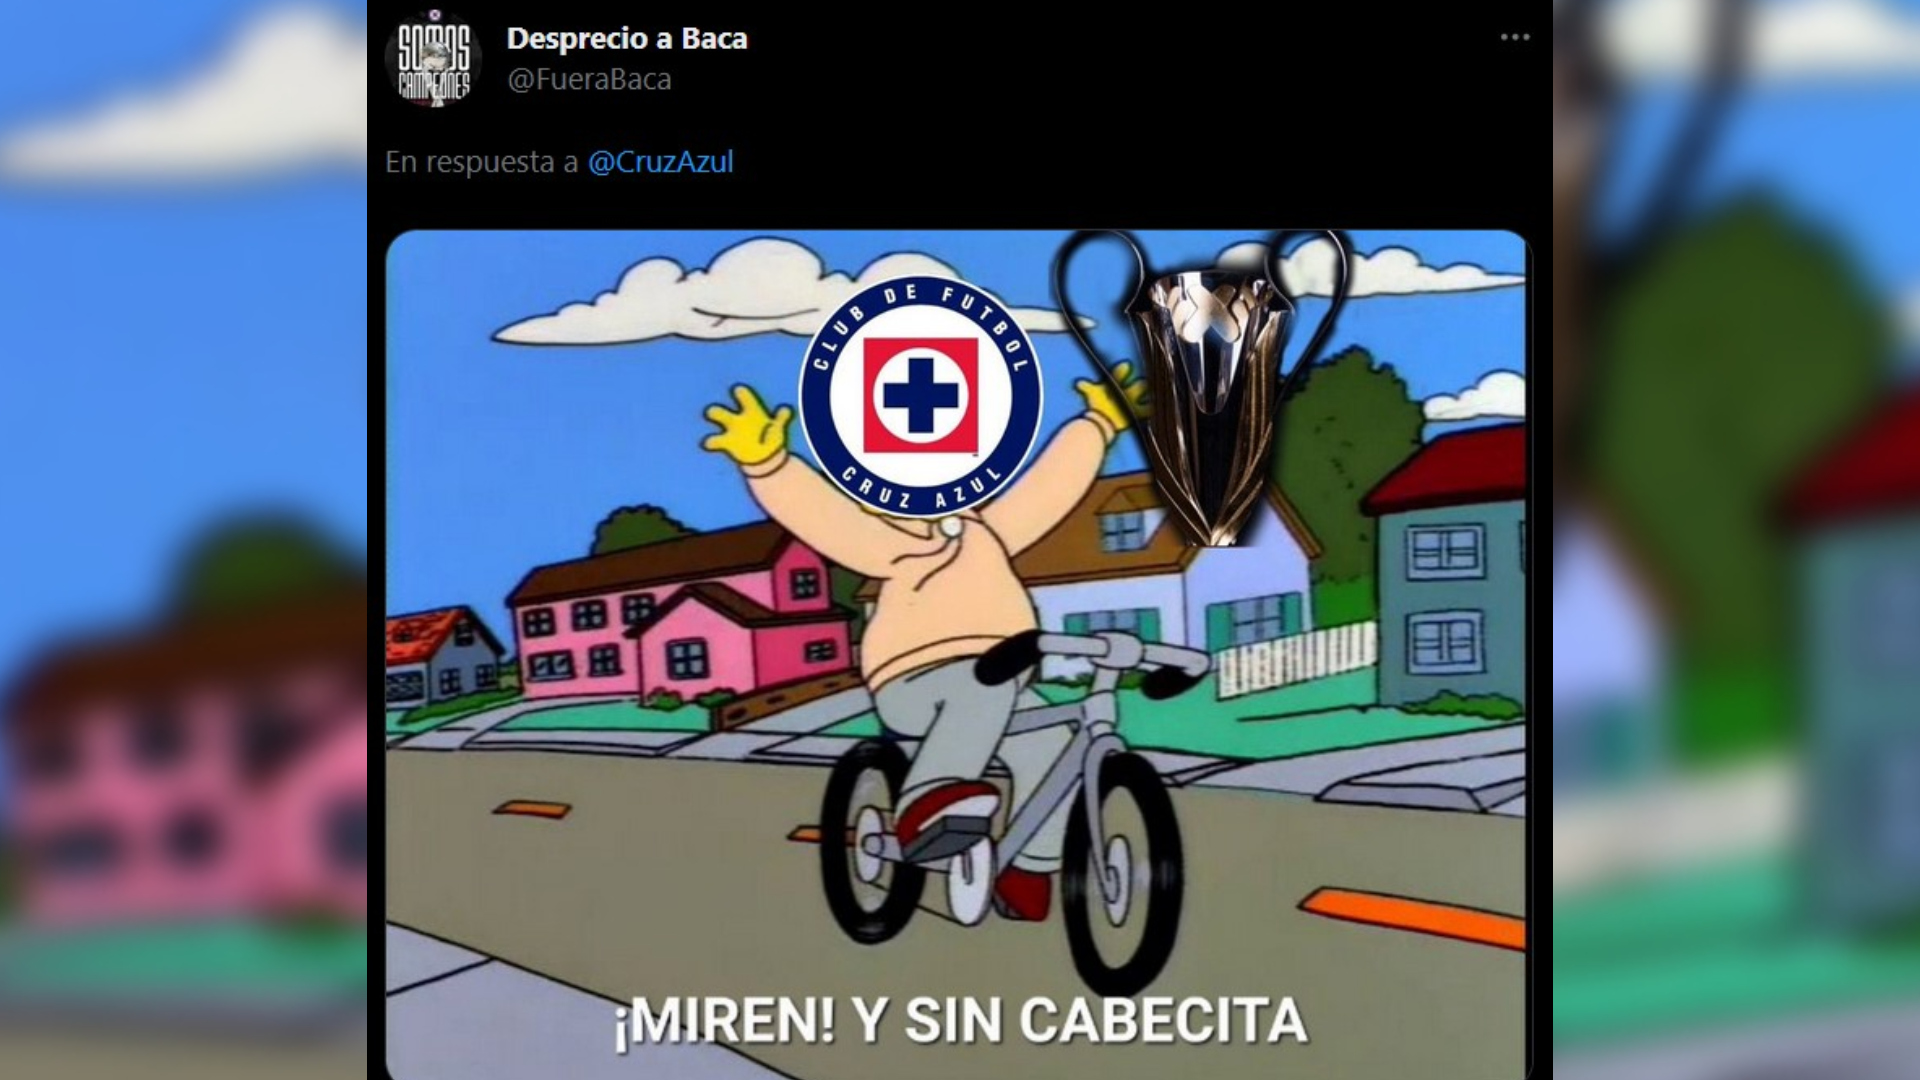 La aficióna puntó que Cruz Azul pudo ganar sin los nuevos refuerzos y sin Jonathan Javier 'Cabecita' Rodríguez, quien ahora se encuentra en el Club América. (Imagen:Twitter/@FueraBaca)